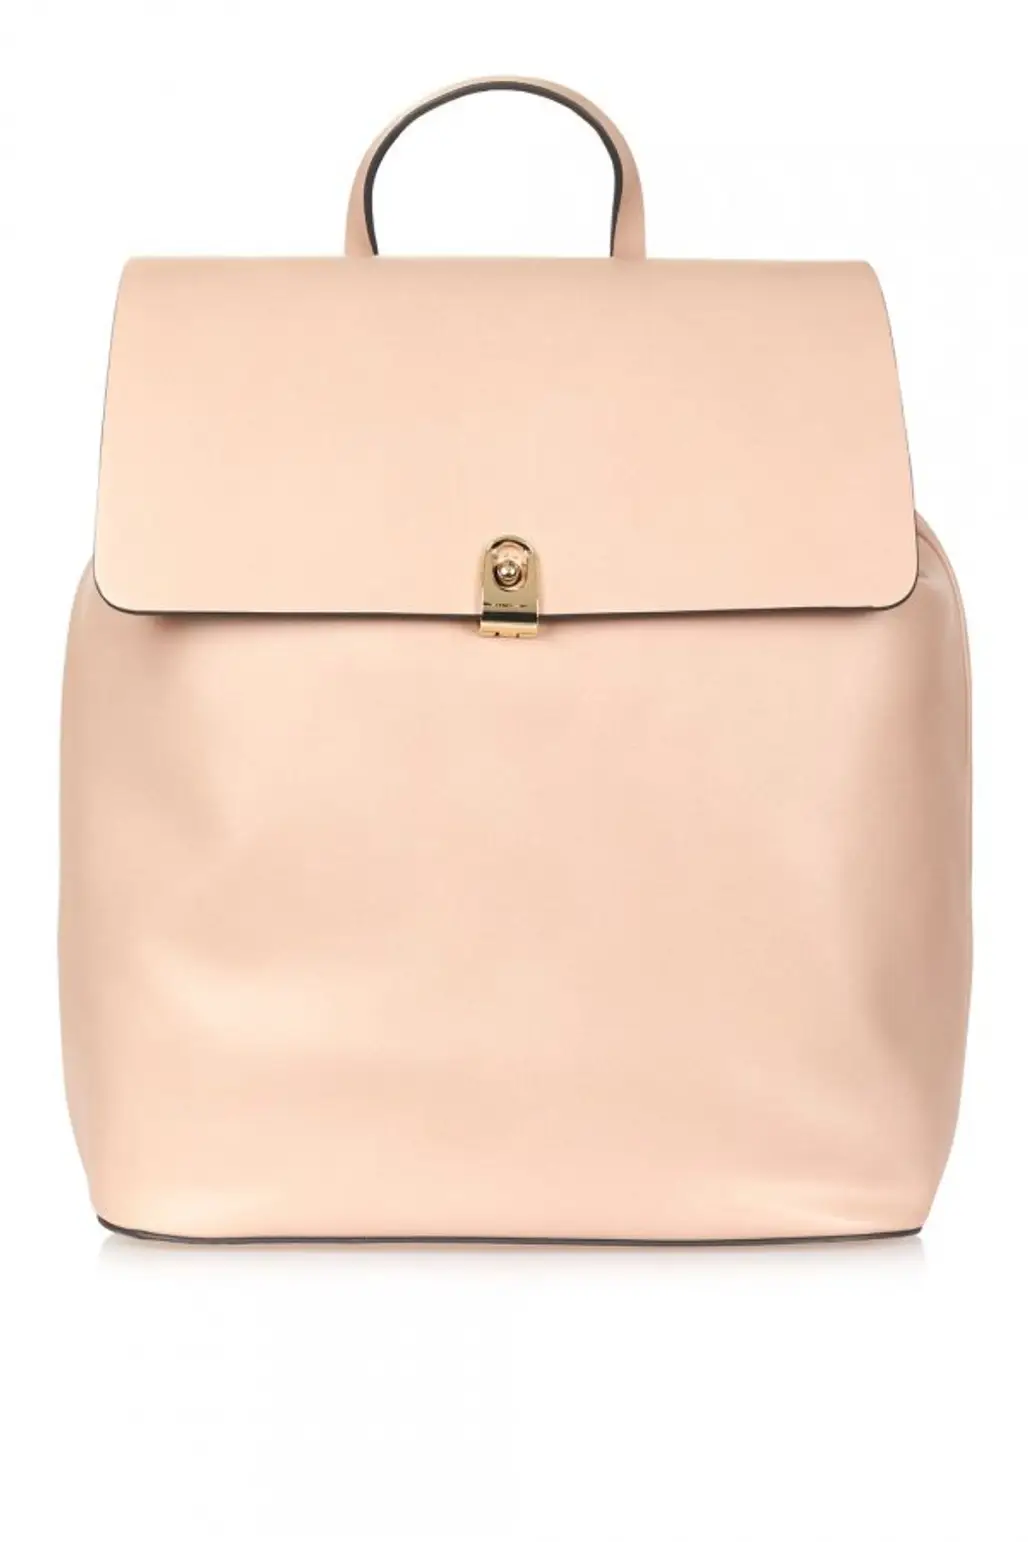 handbag, bag, shoulder bag, leather, fashion accessory,